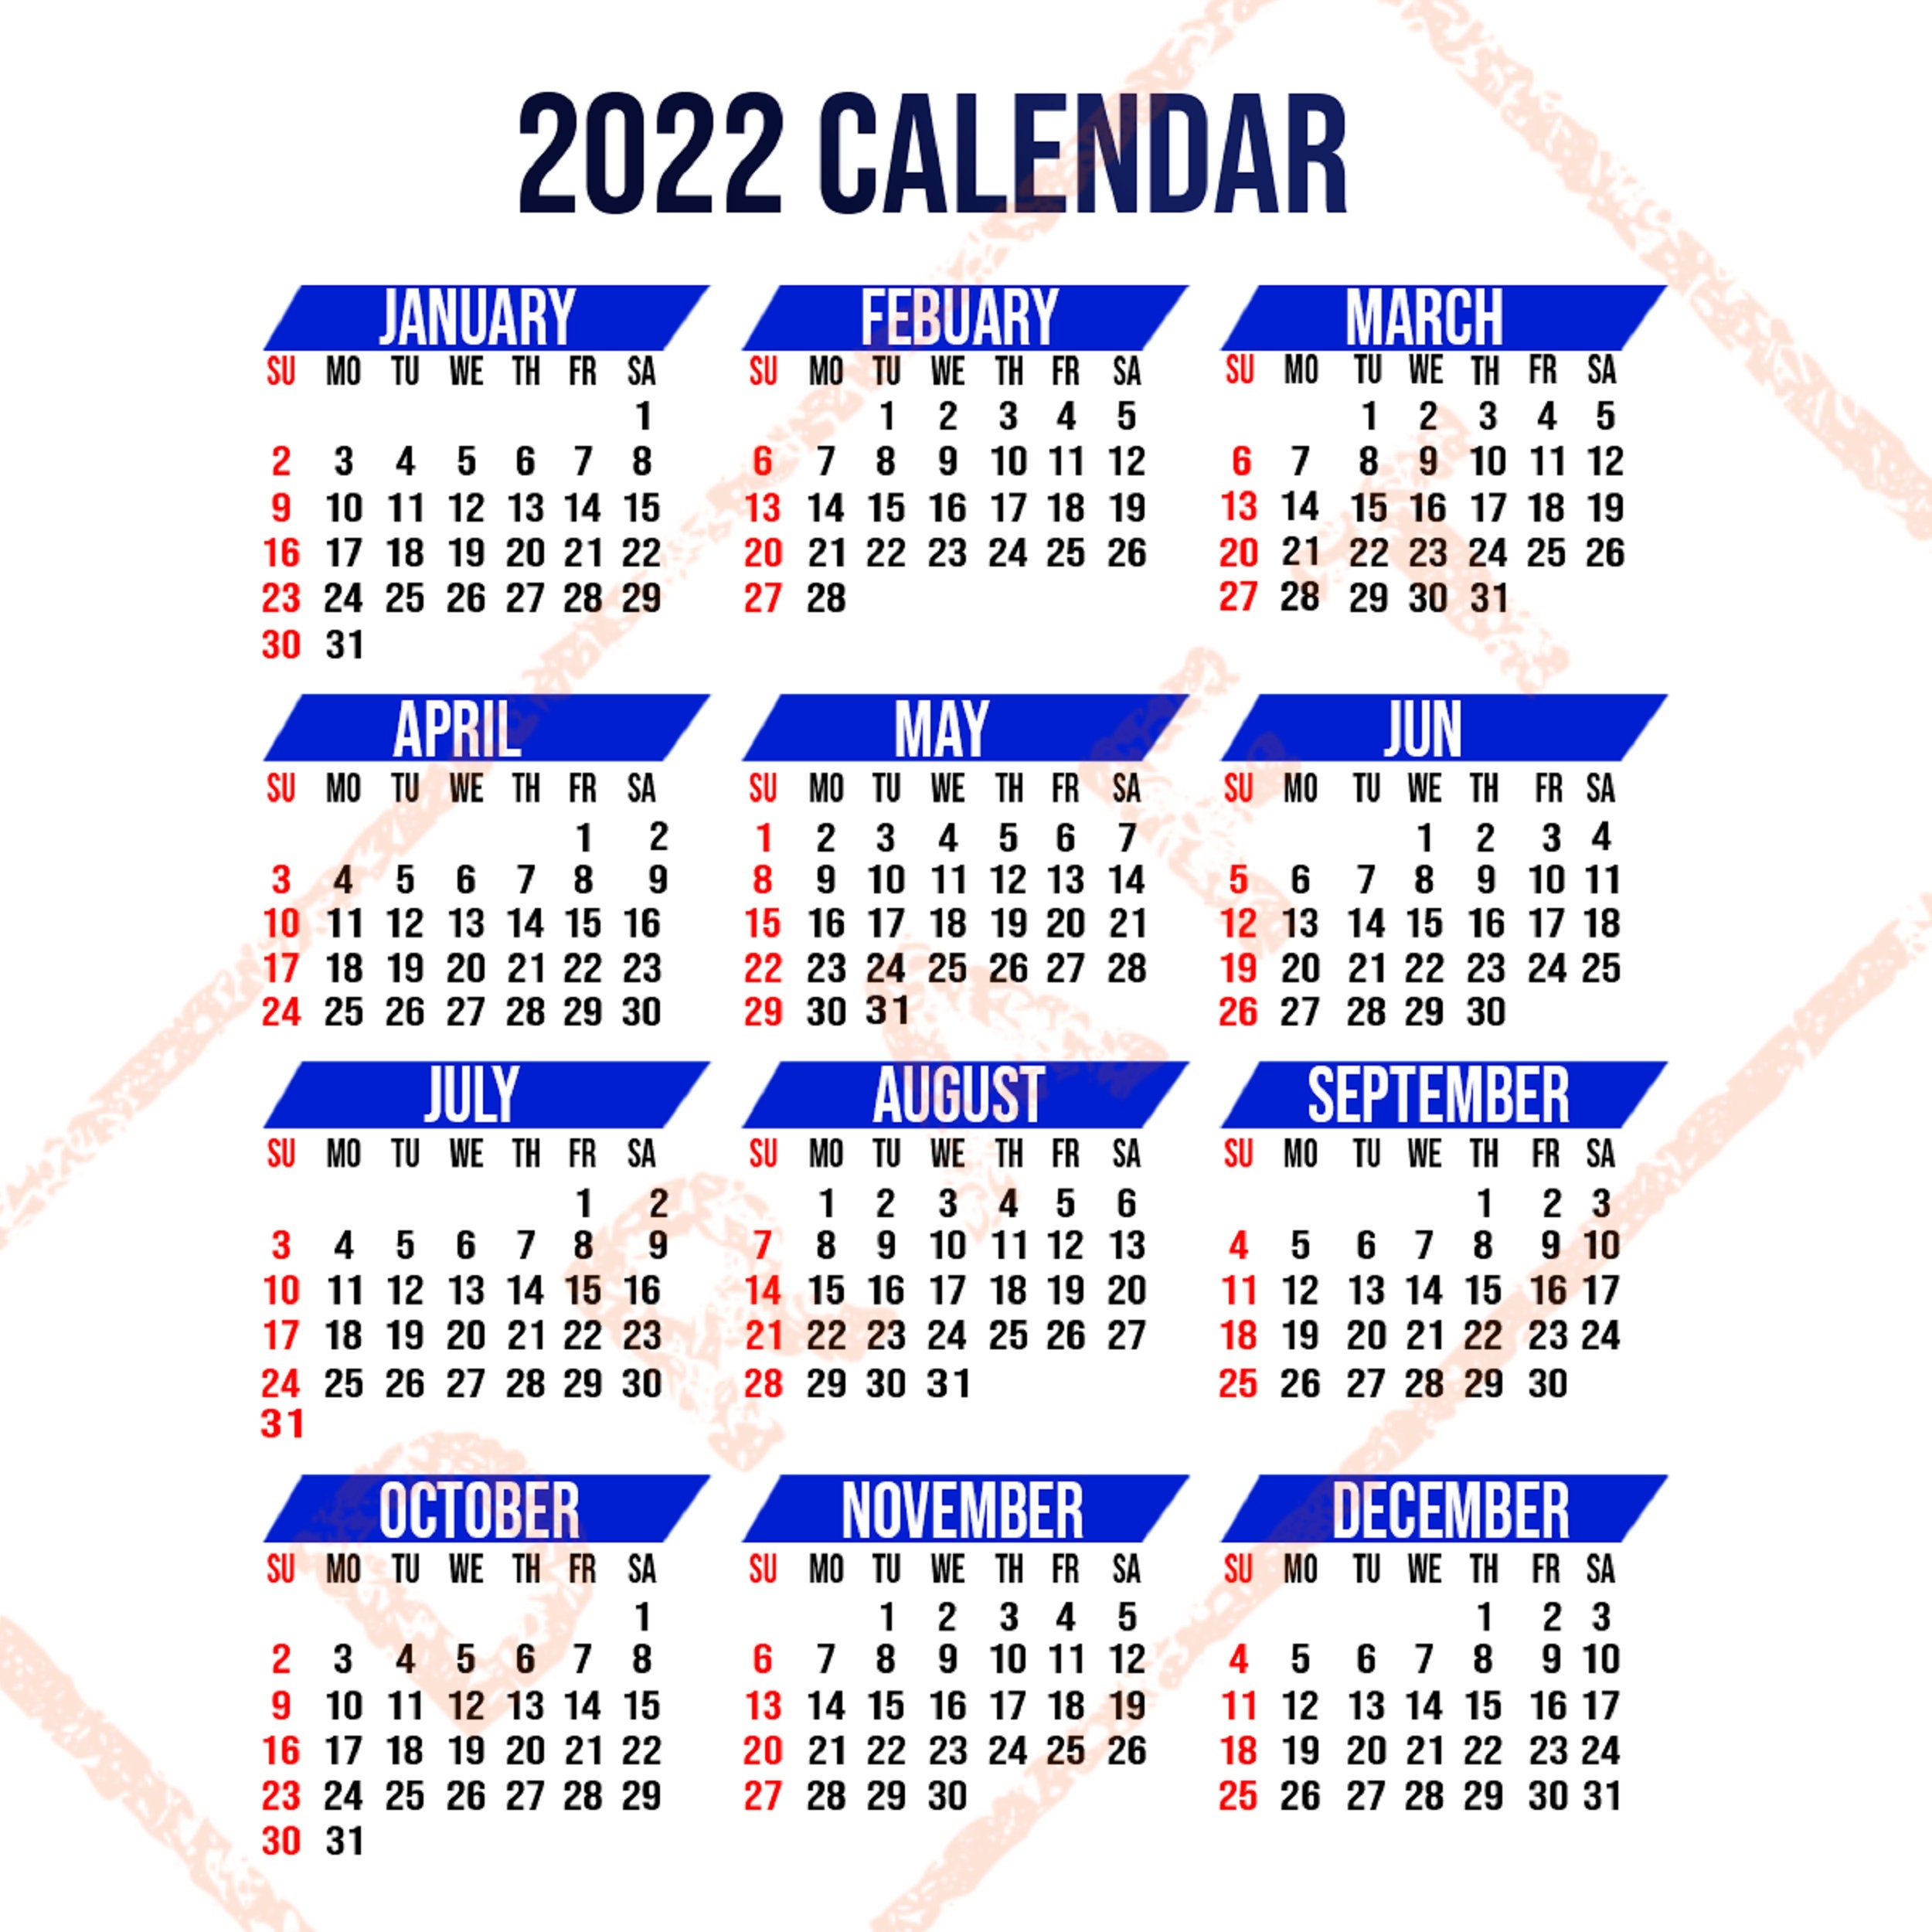 Kalender 2022 Lengkap Dengan Tanggal Merah Download K